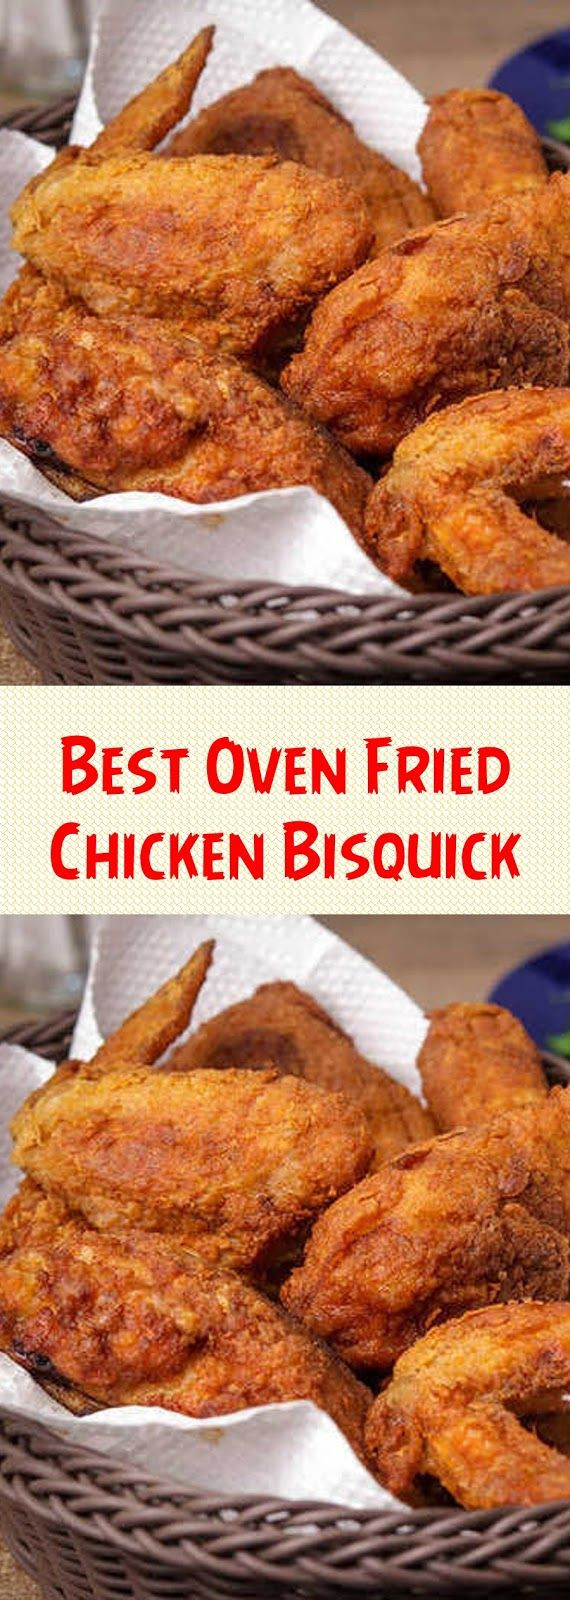 Bisquick Oven Fried Chicken
 Best Oven Fried Chicken Bisquick in 2020